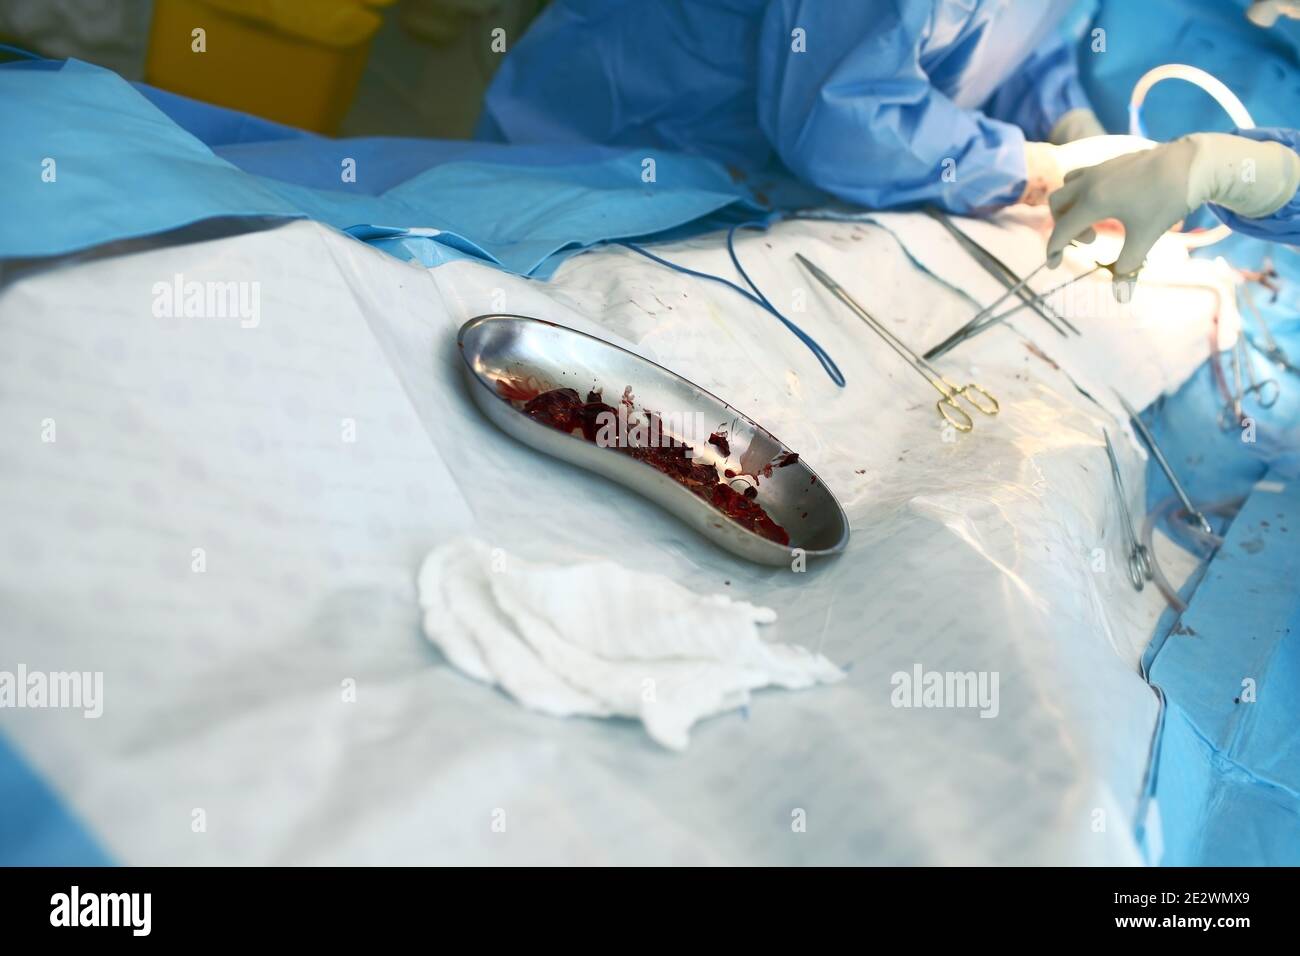 Coaguli di sangue eliminati dai vasi durante l'intervento chirurgico. Foto Stock